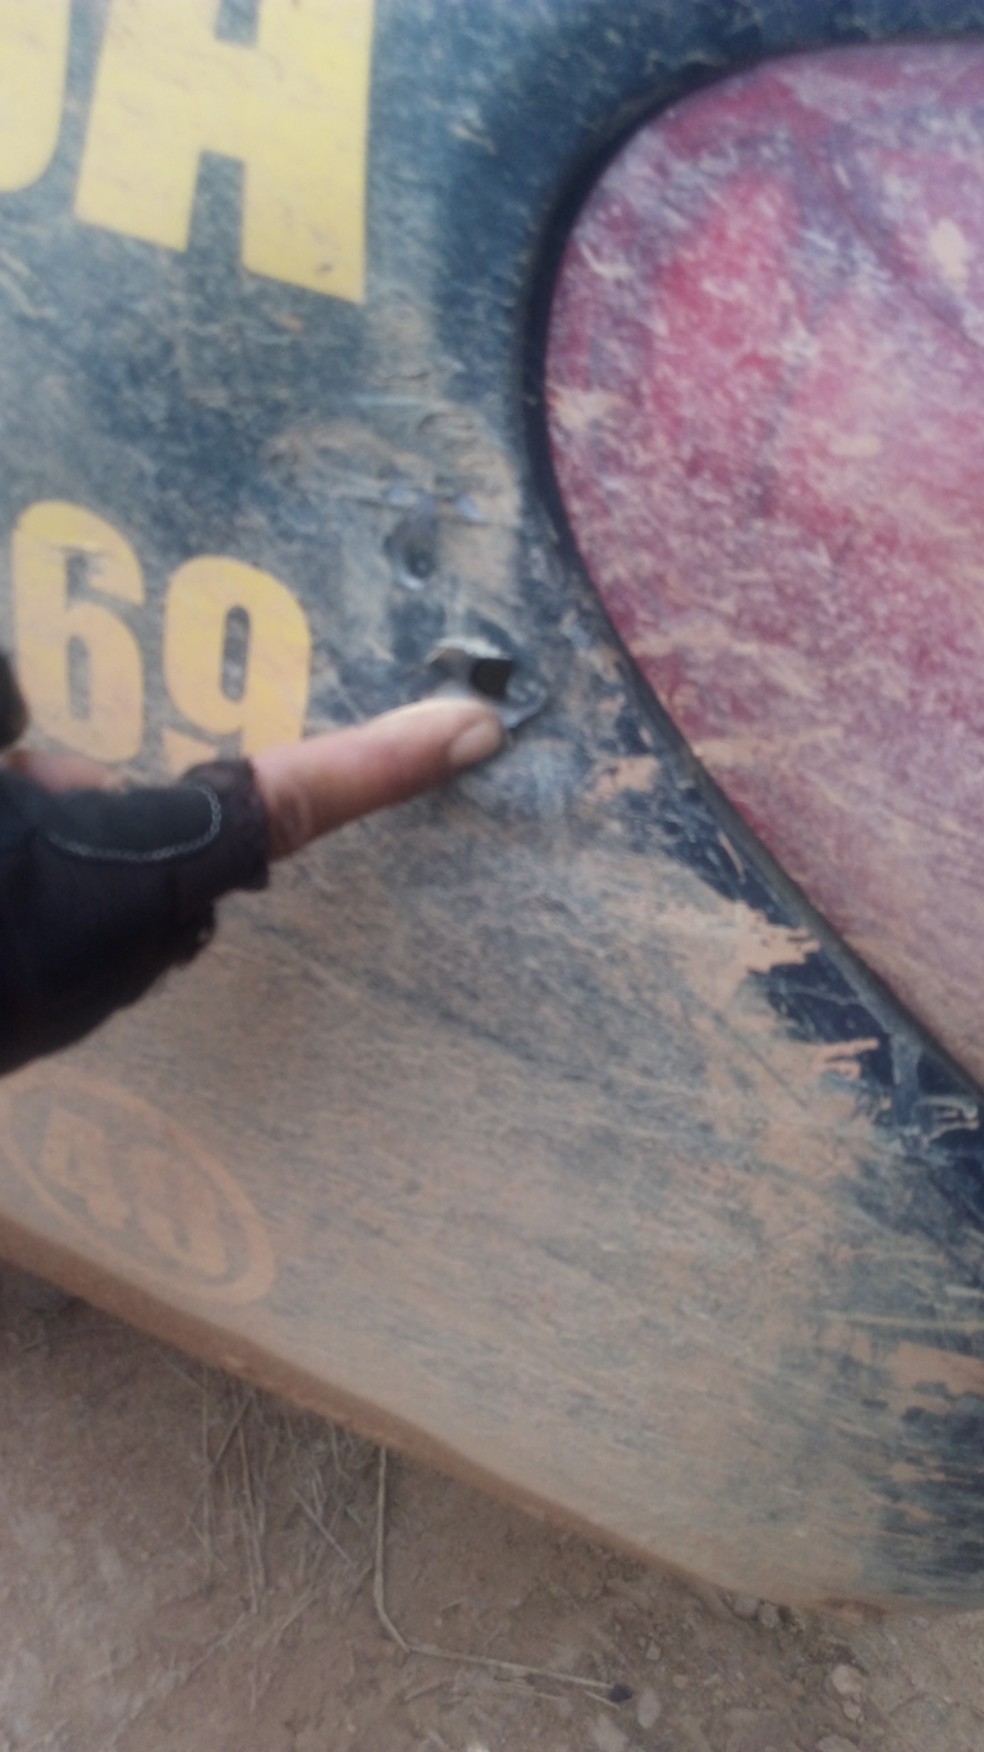 Marcas de tiro em carro onde ocorreu suposto confronto em fazenda em Colniza — Foto: Arquivo pessoal